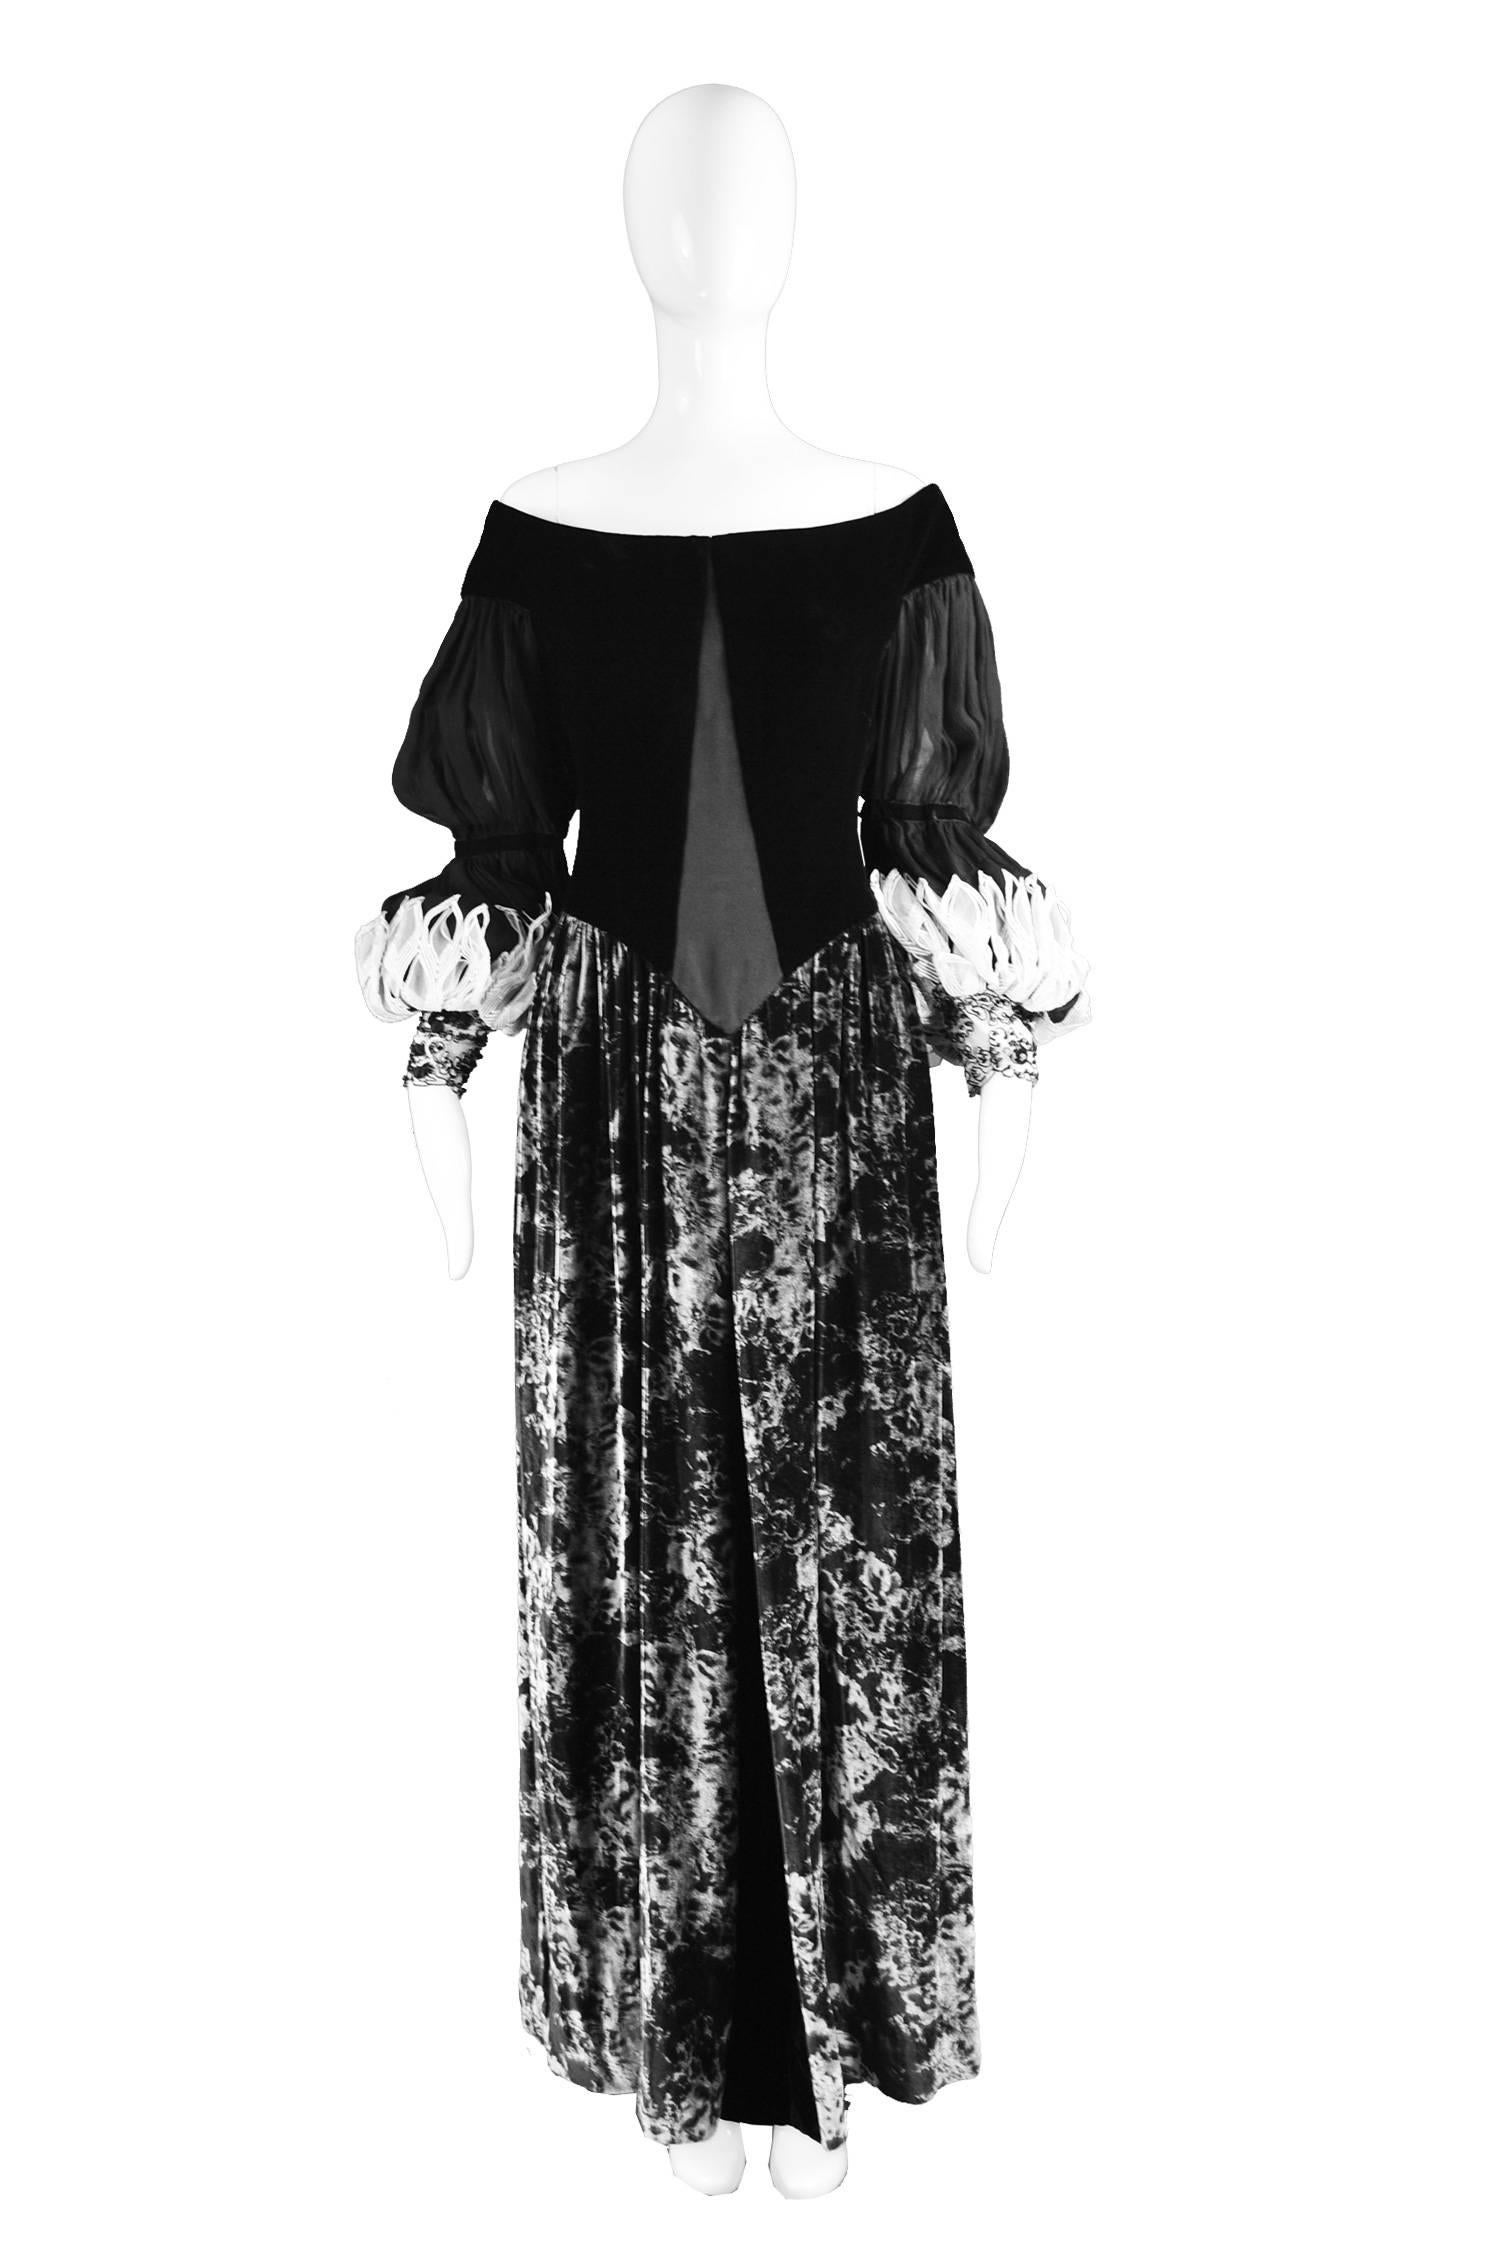 Curiel Couture Vintage Black & Grey Printed Velvet & Chiffon Evening Gown, 1970s

Estimated Size: UK 12/ US 8/ EU 40. Please check measurements.
Bust - 36” / 91cm
Waist - 30” / 76cm
Hips - Free
Length (Shoulder to Hem) - 56” / 142cm

Condition: